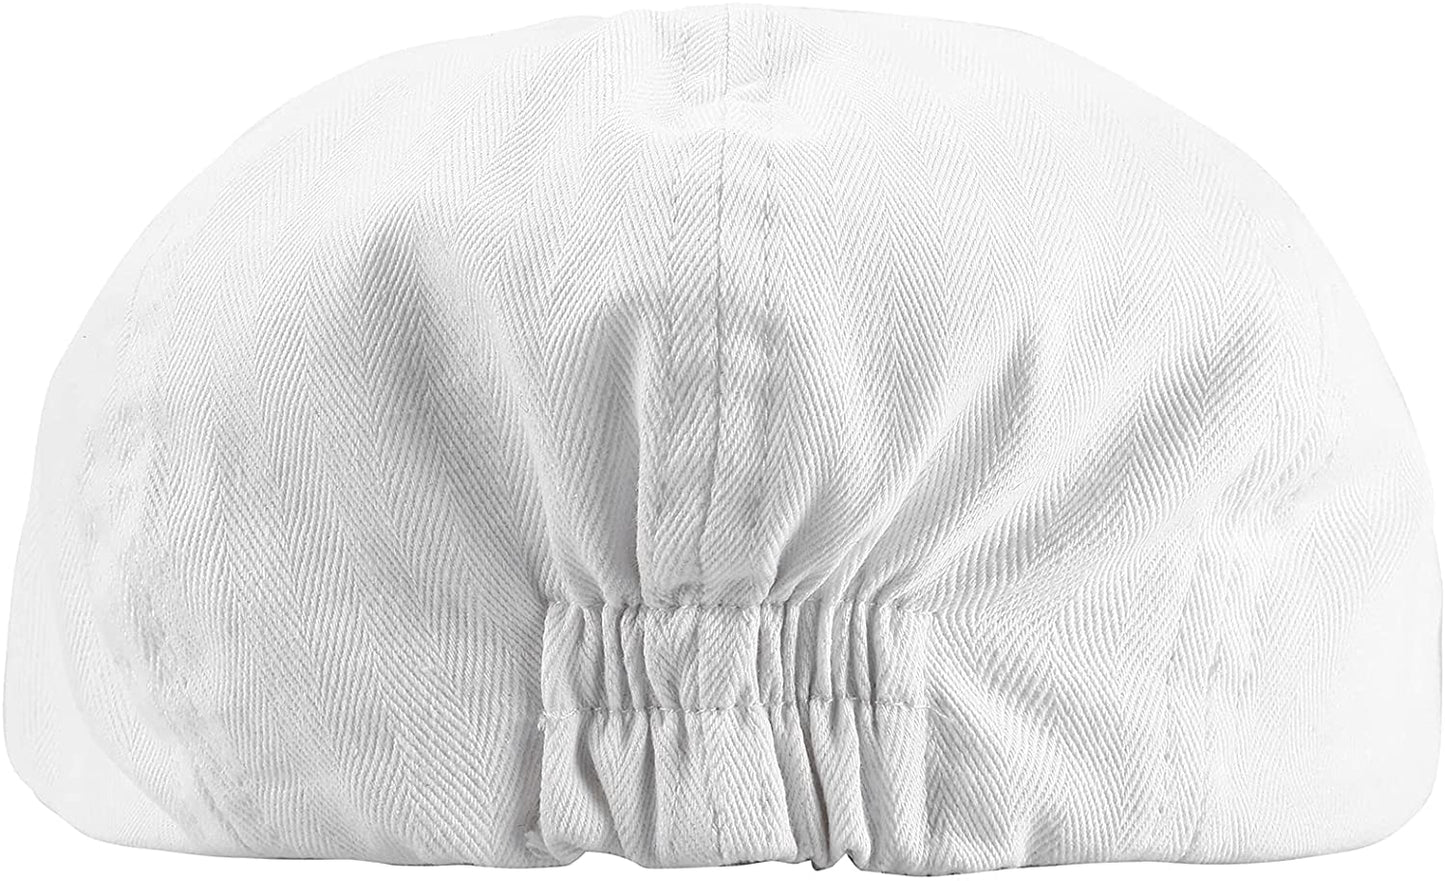 A&J DESIGN Baby Boys Baptism Hat Newsboy Caps Kids Vintage Driver Beret Hat